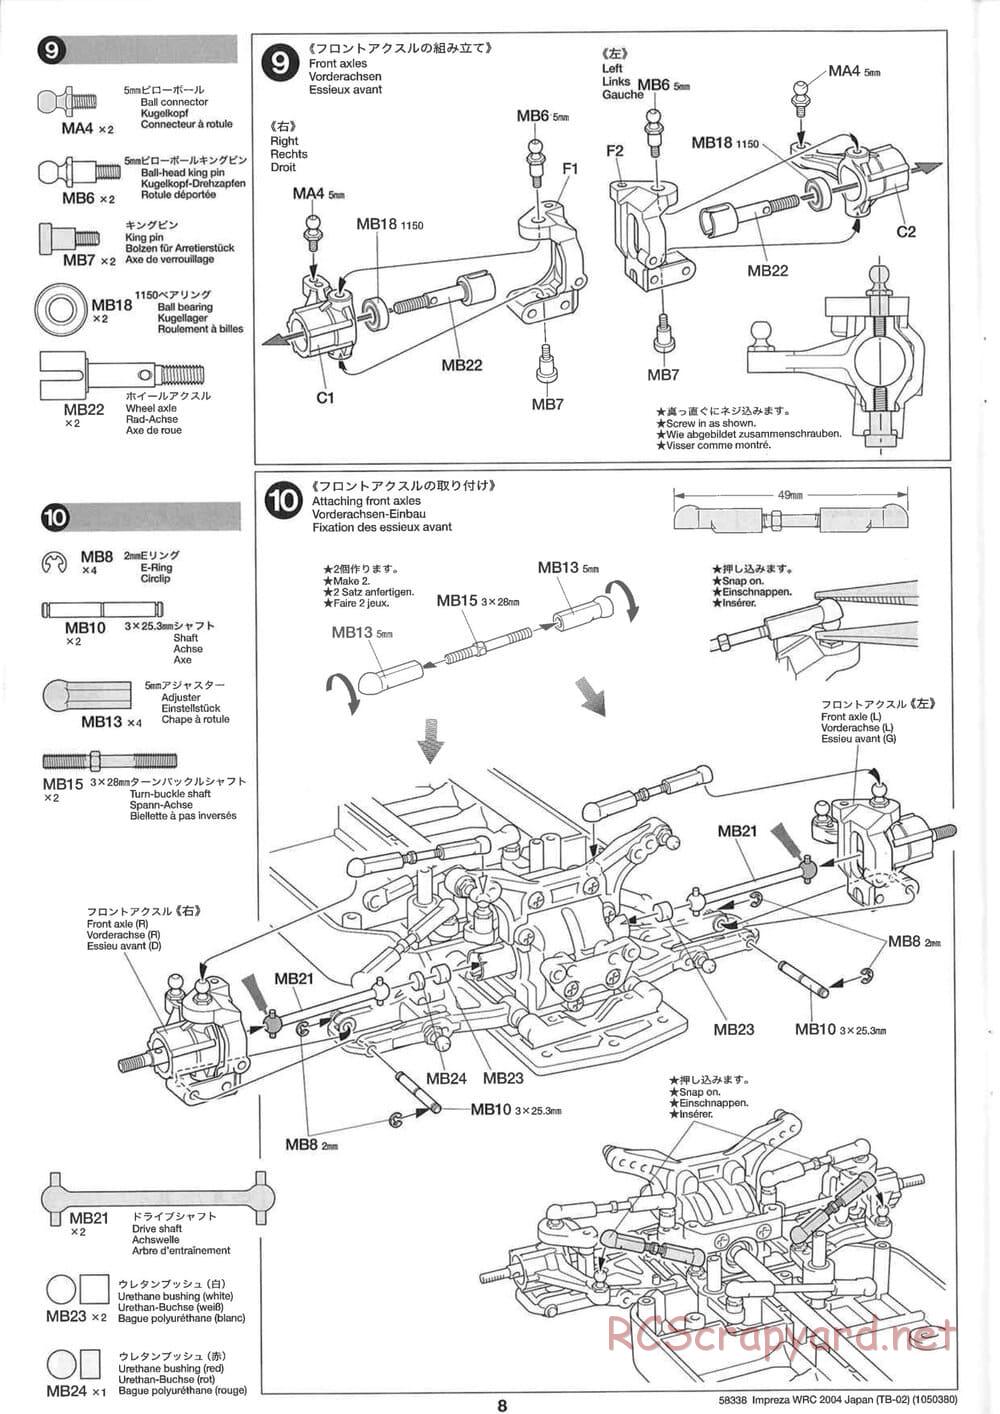 Tamiya - Subaru Impreza WRC 2004 Rally Japan - TB-02 Chassis - Manual - Page 8